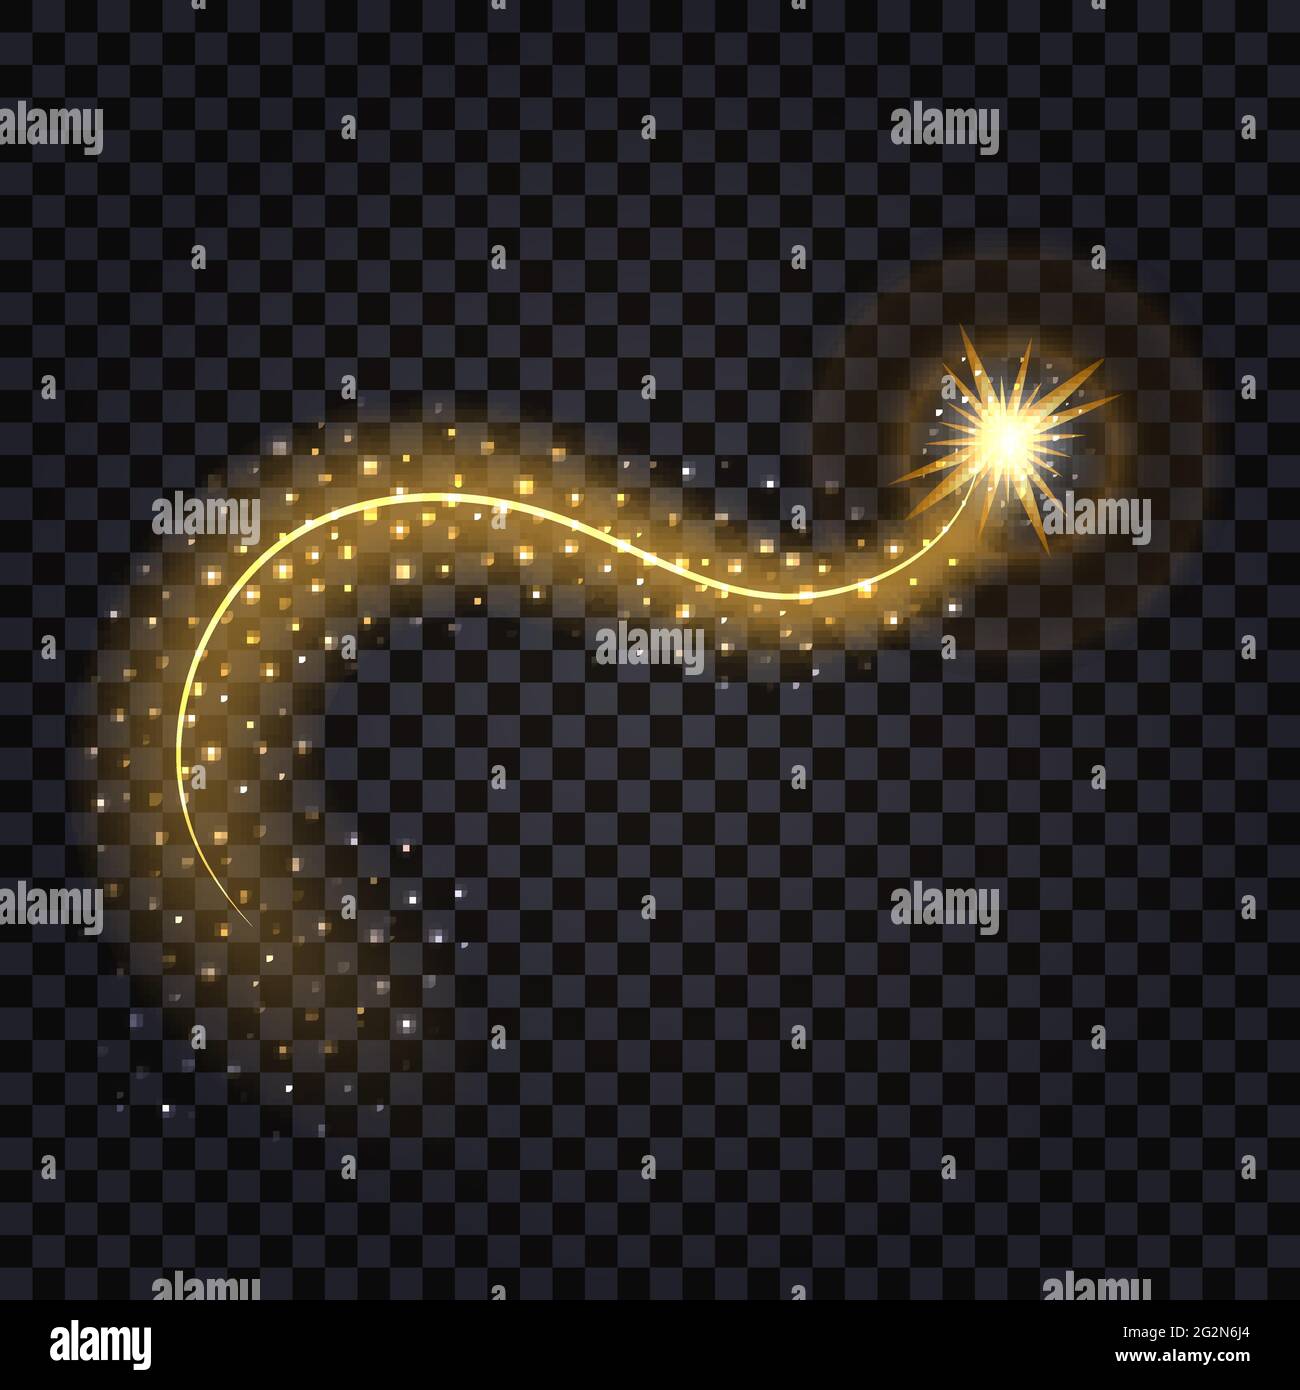 Goldene Welle mit leuchtendem Effekt. Glänzender Stern mit Wirbelspur und Glitzer, isoliertes Design-Element auf transparentem Hintergrund. Vektordarstellung Stock Vektor